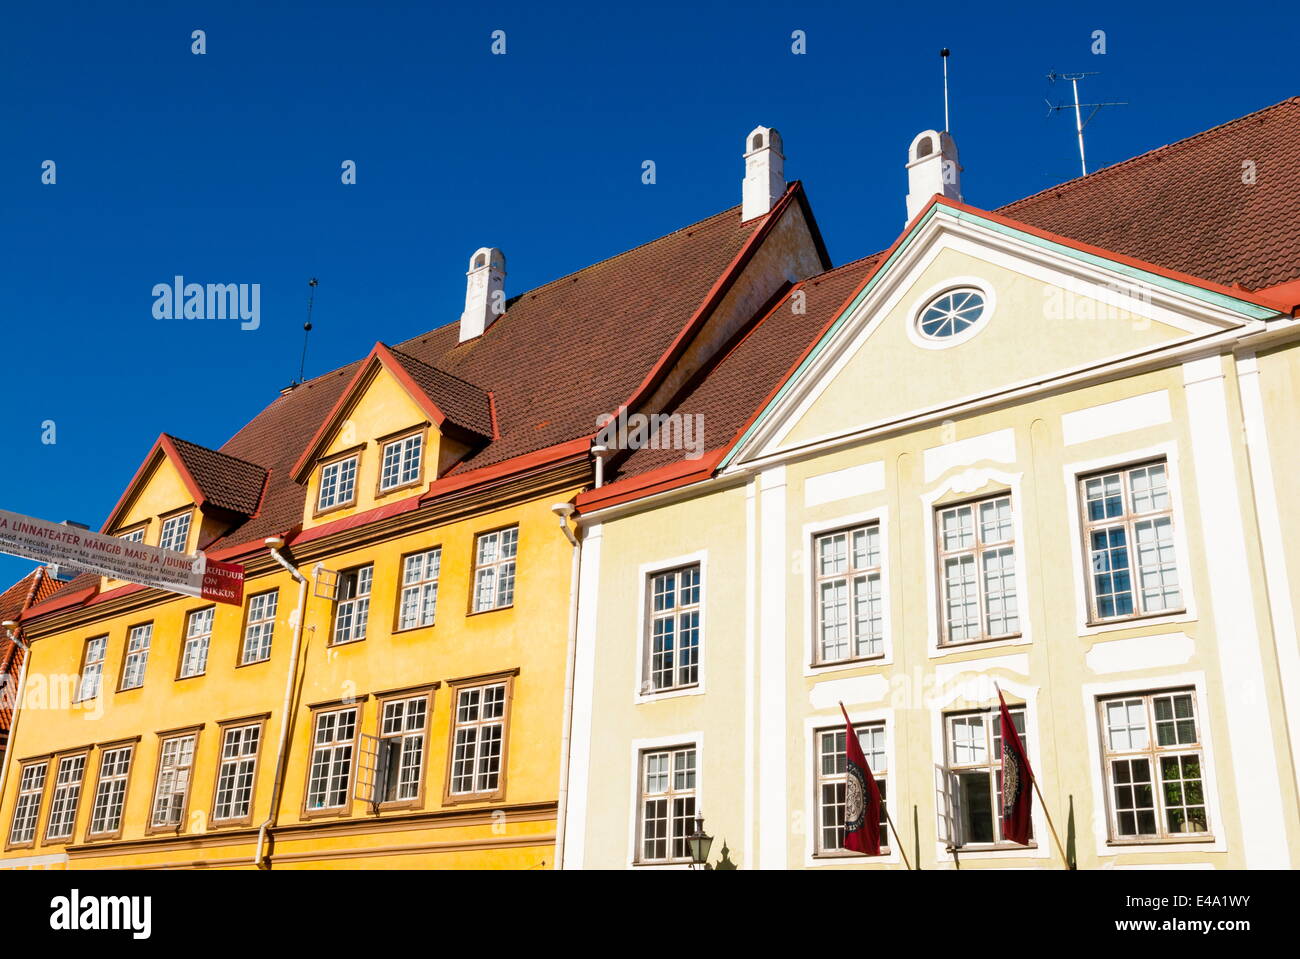 Building at Lai Street, Old Town, UNESCO World Heritage Site, Tallinn, Estonia, Baltic States, Europe Stock Photo